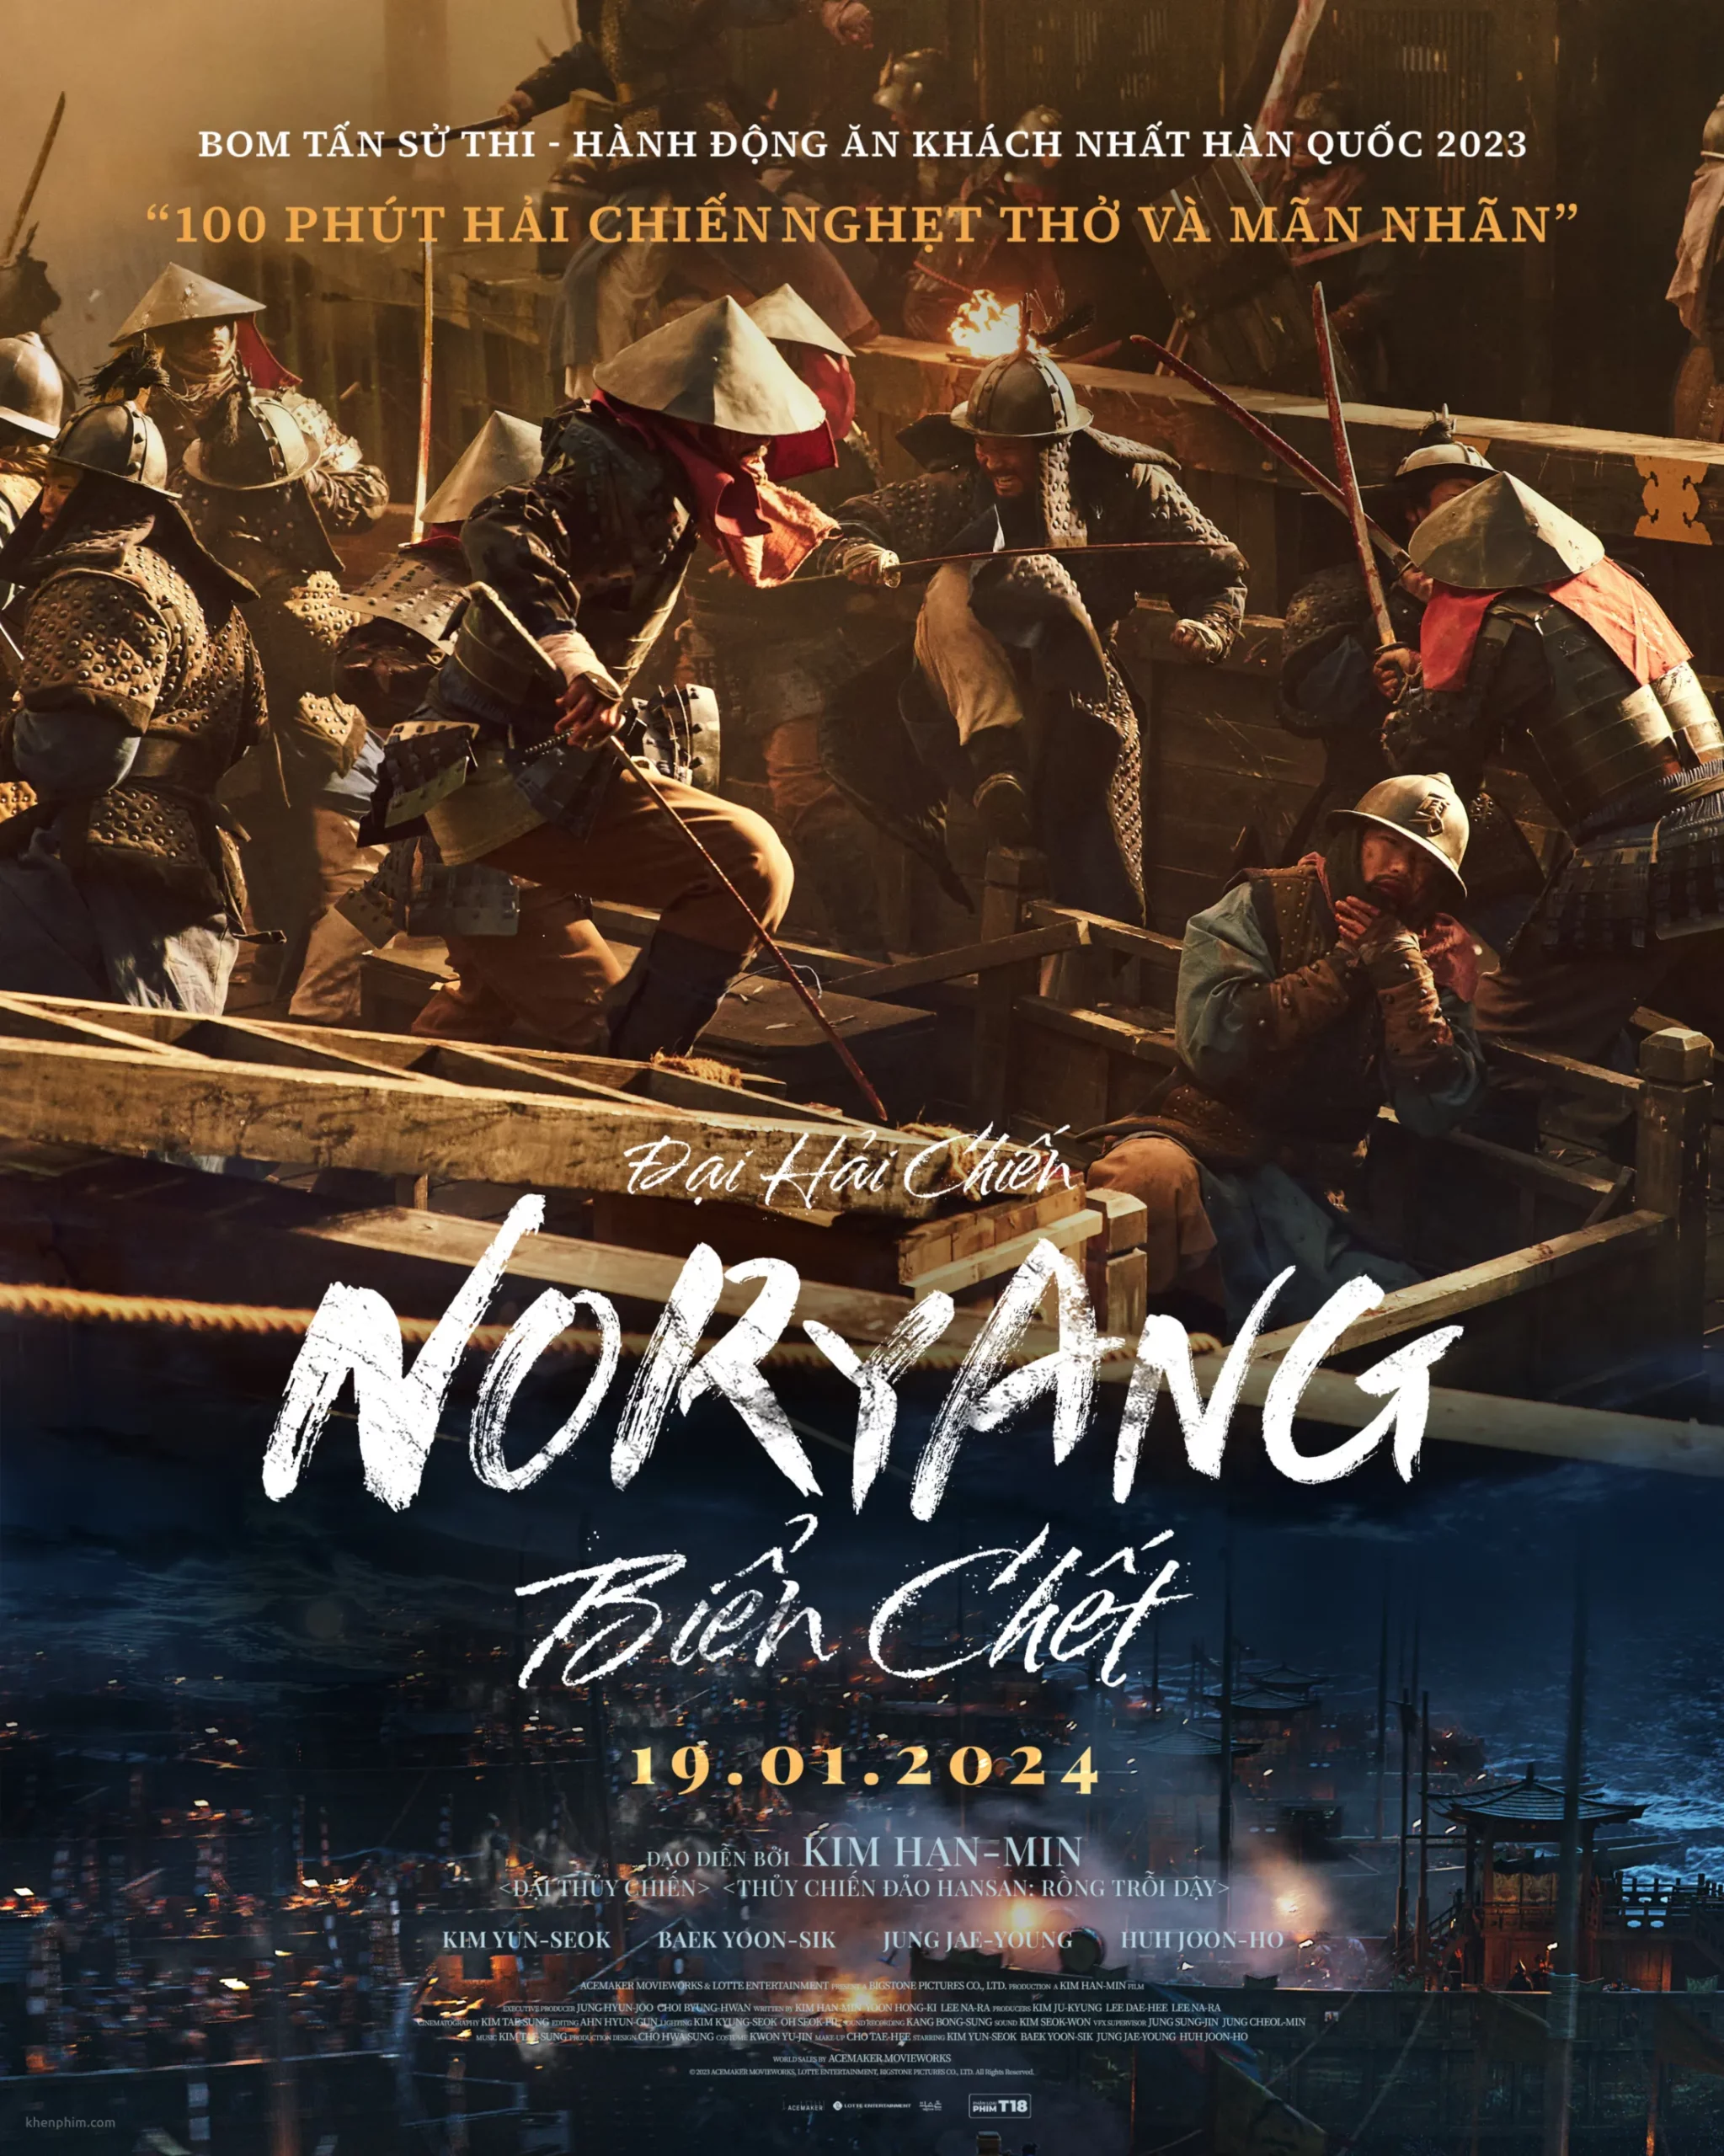 Poster phim Noryang: Deadly Sea (Đại Hải Chiến Noryang: Biển Chết)